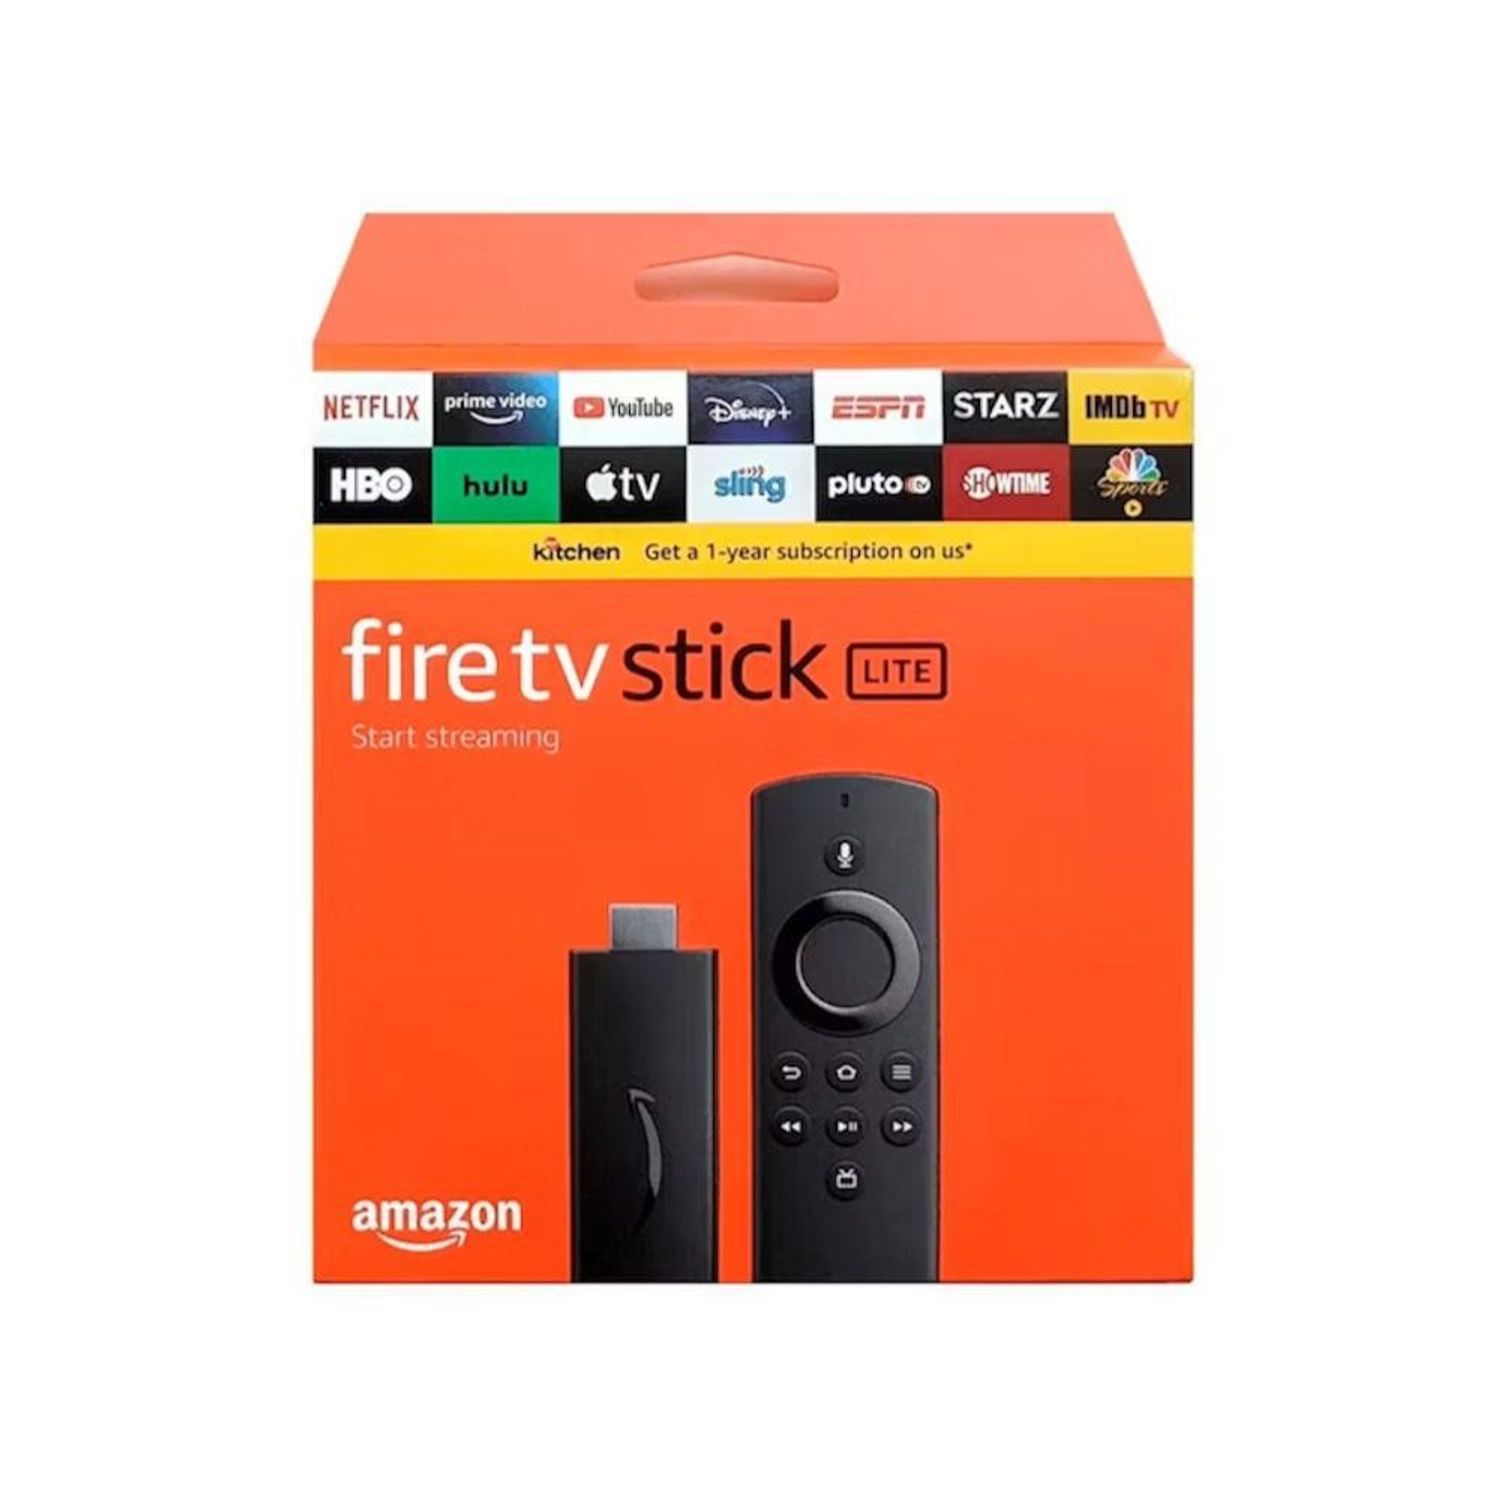 5 motivos para comprar el Fire TV Stick en este Black Friday ahora